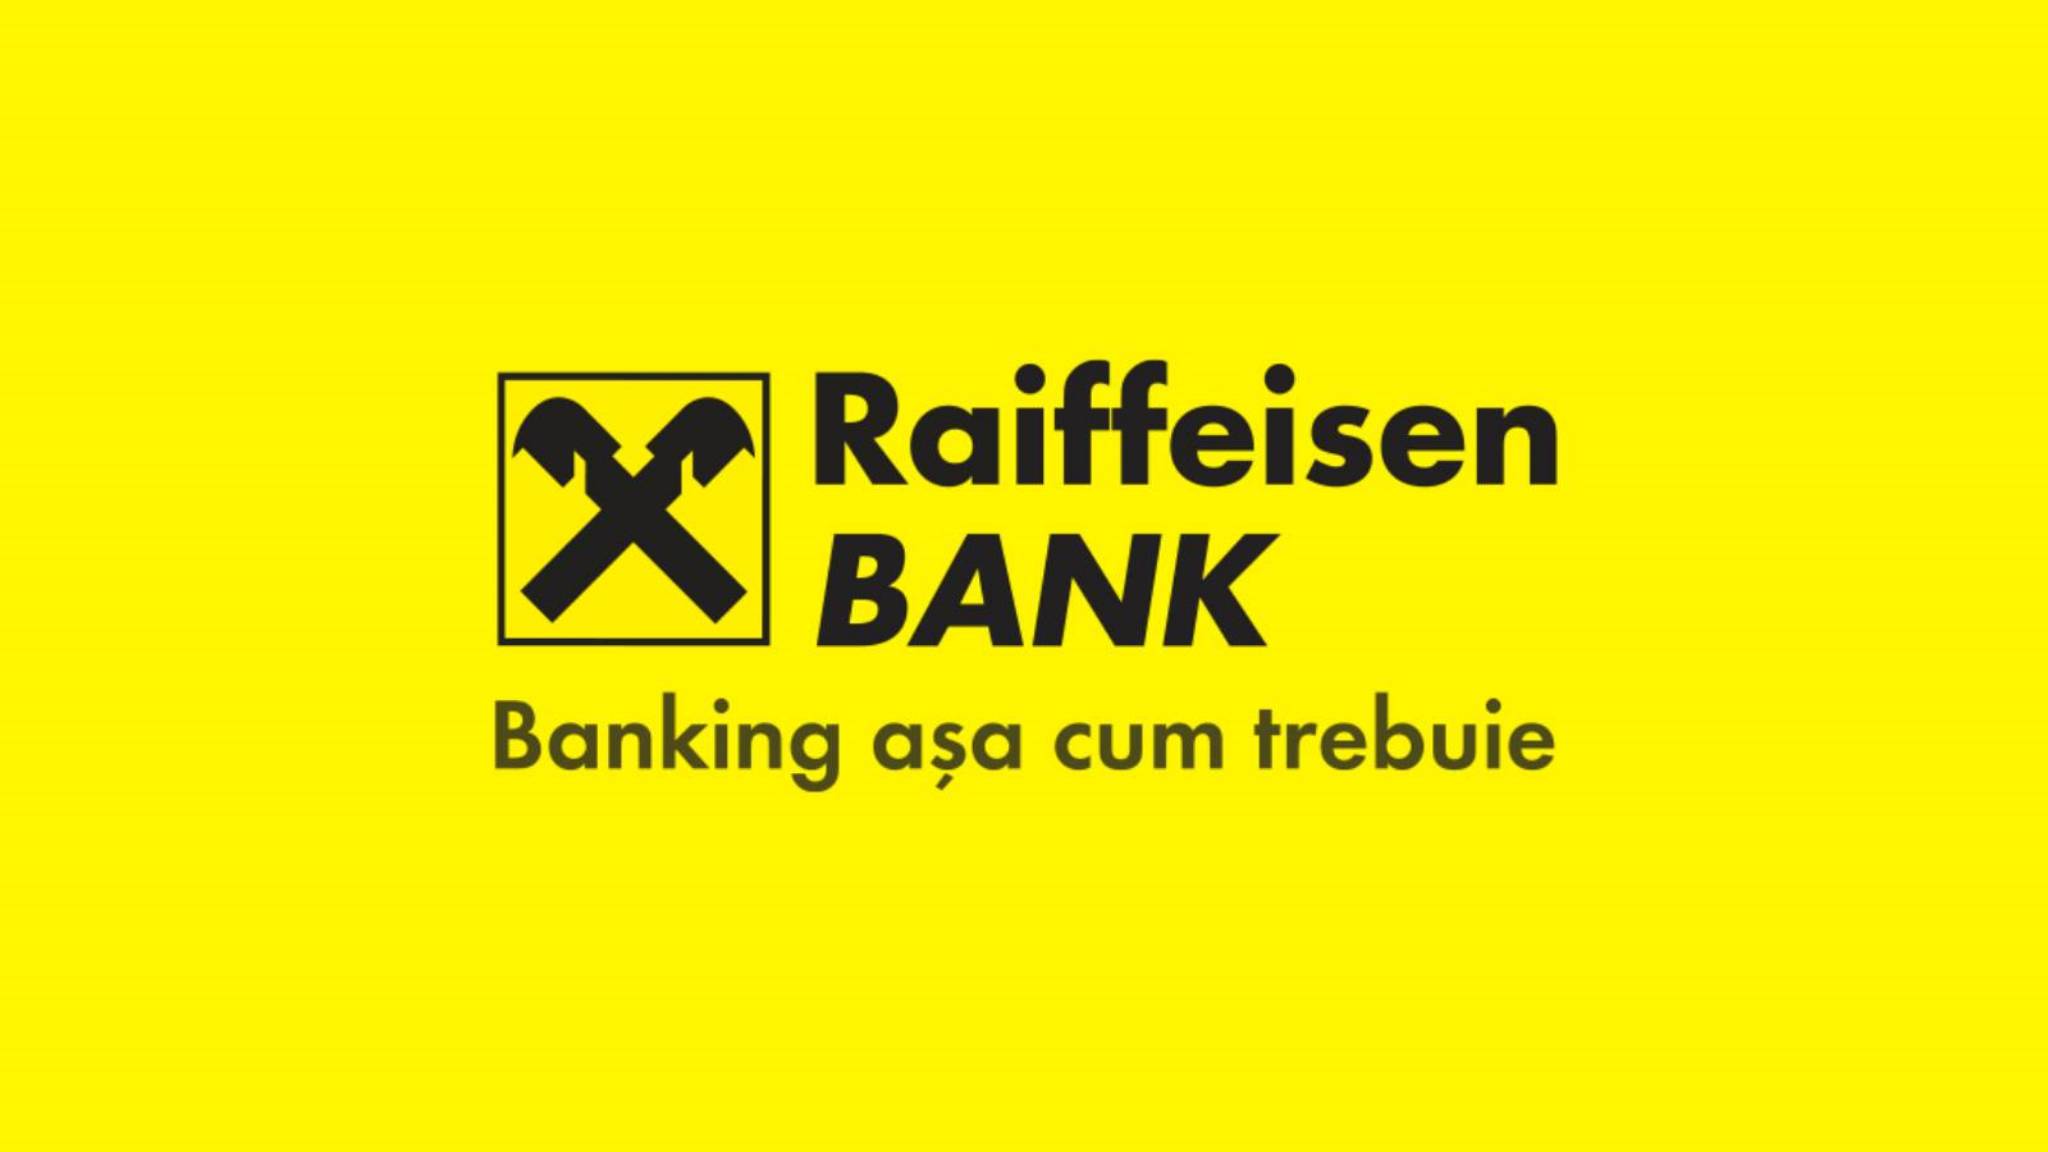 Offizielle Botschaft der Raiffeisen Bank WICHTIGER LETZTER MOMENT Rumänische Kunden